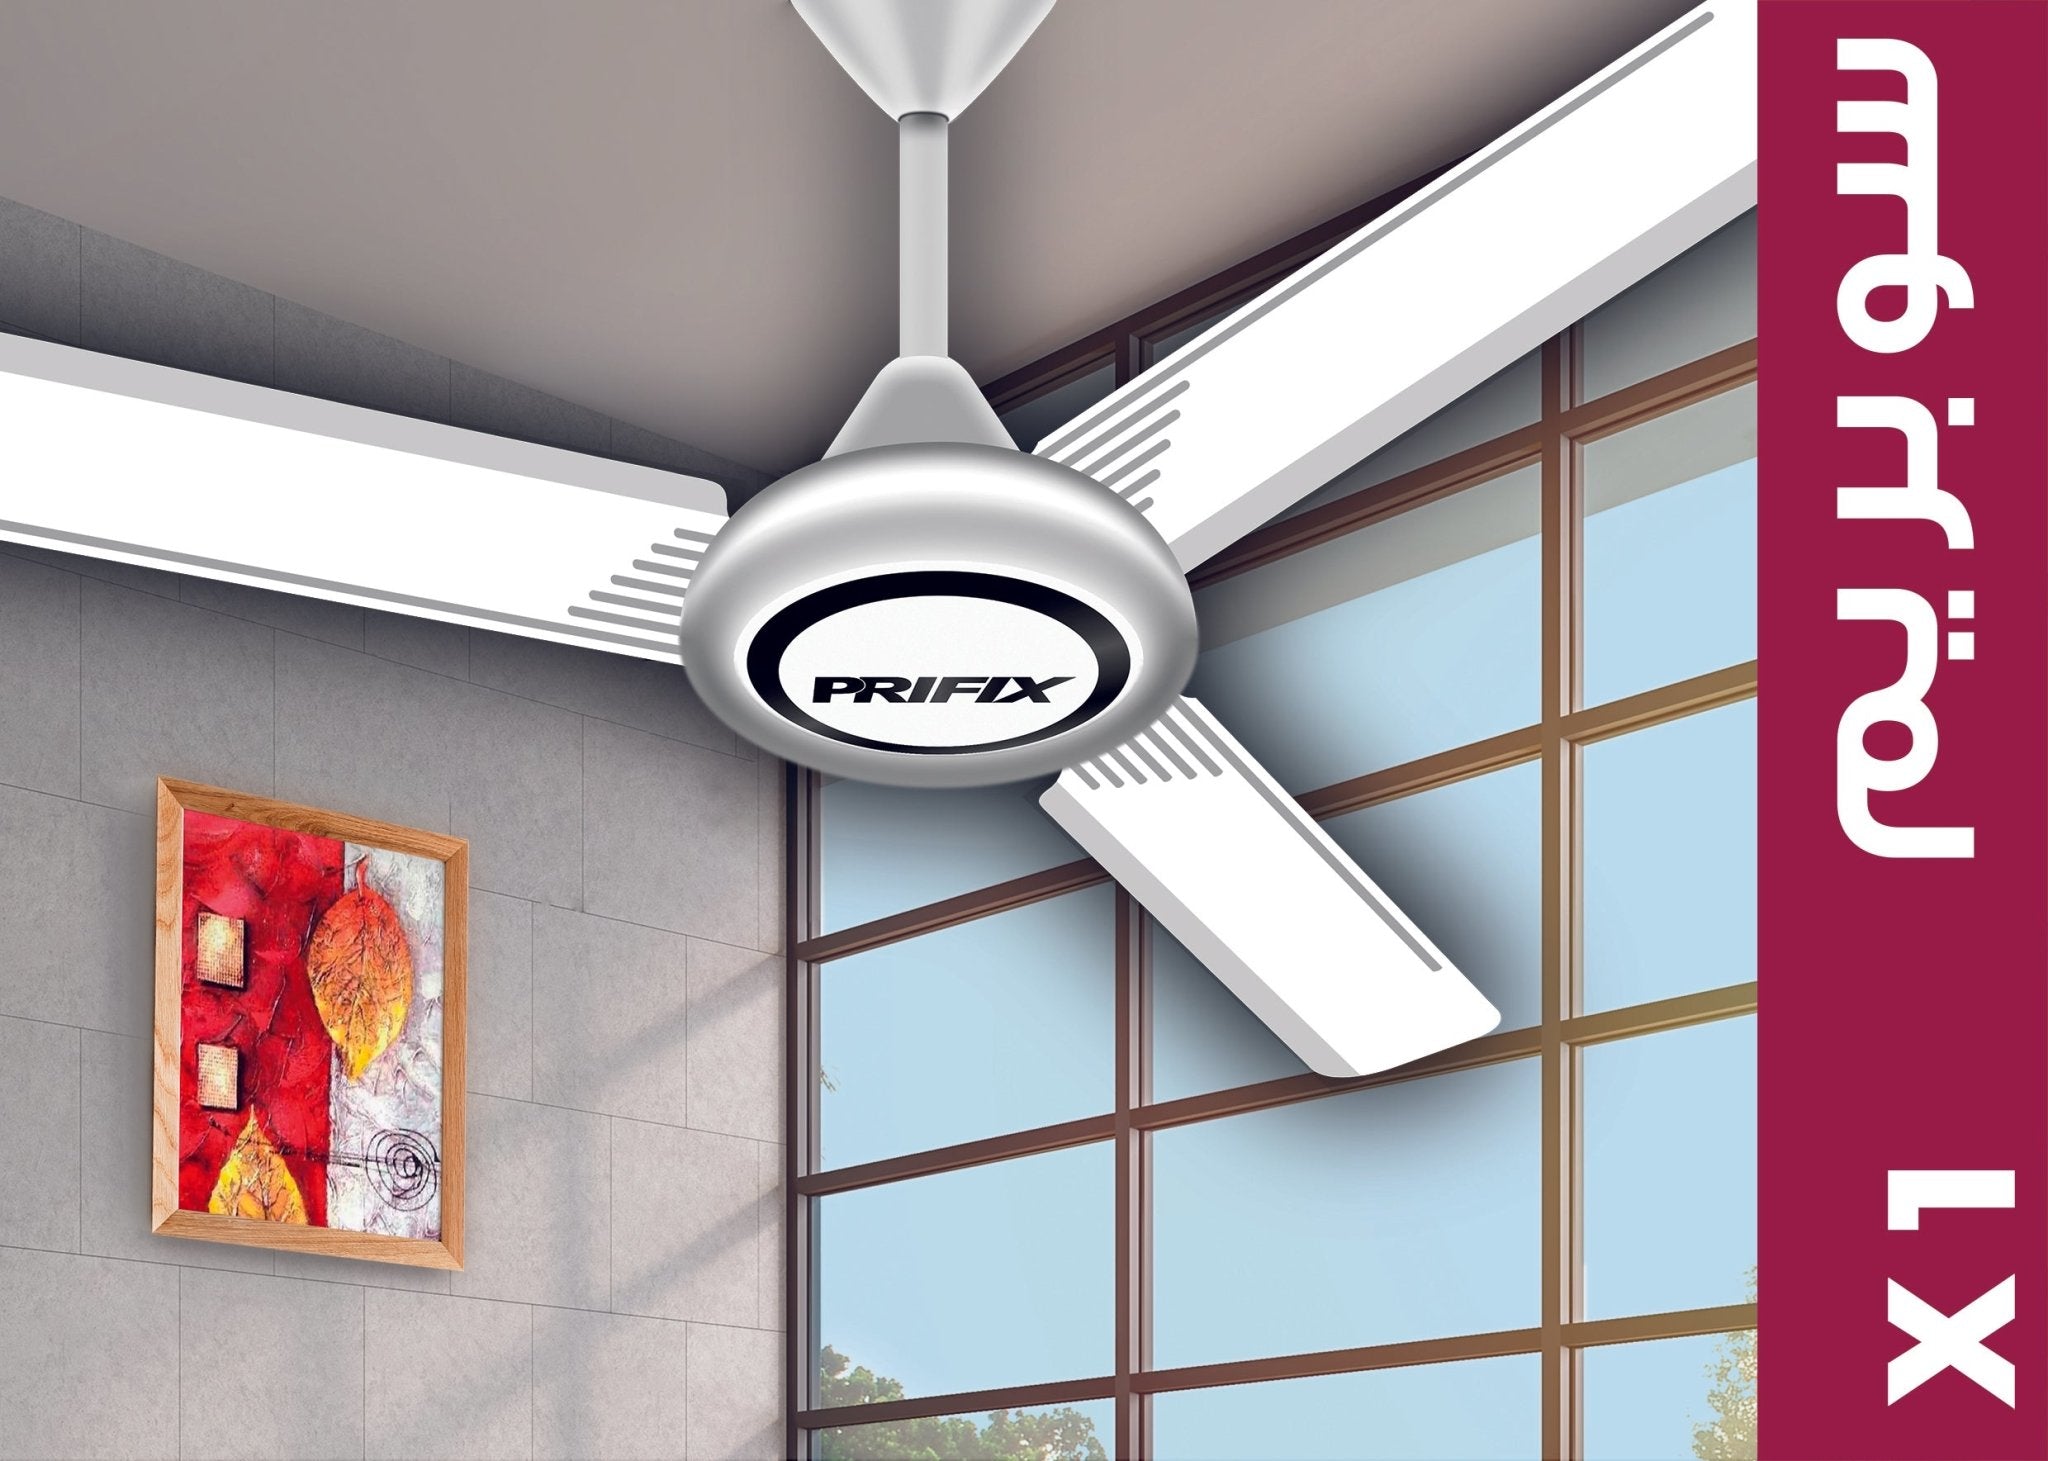 Prifix Suprem ceiling fan white - Prifix